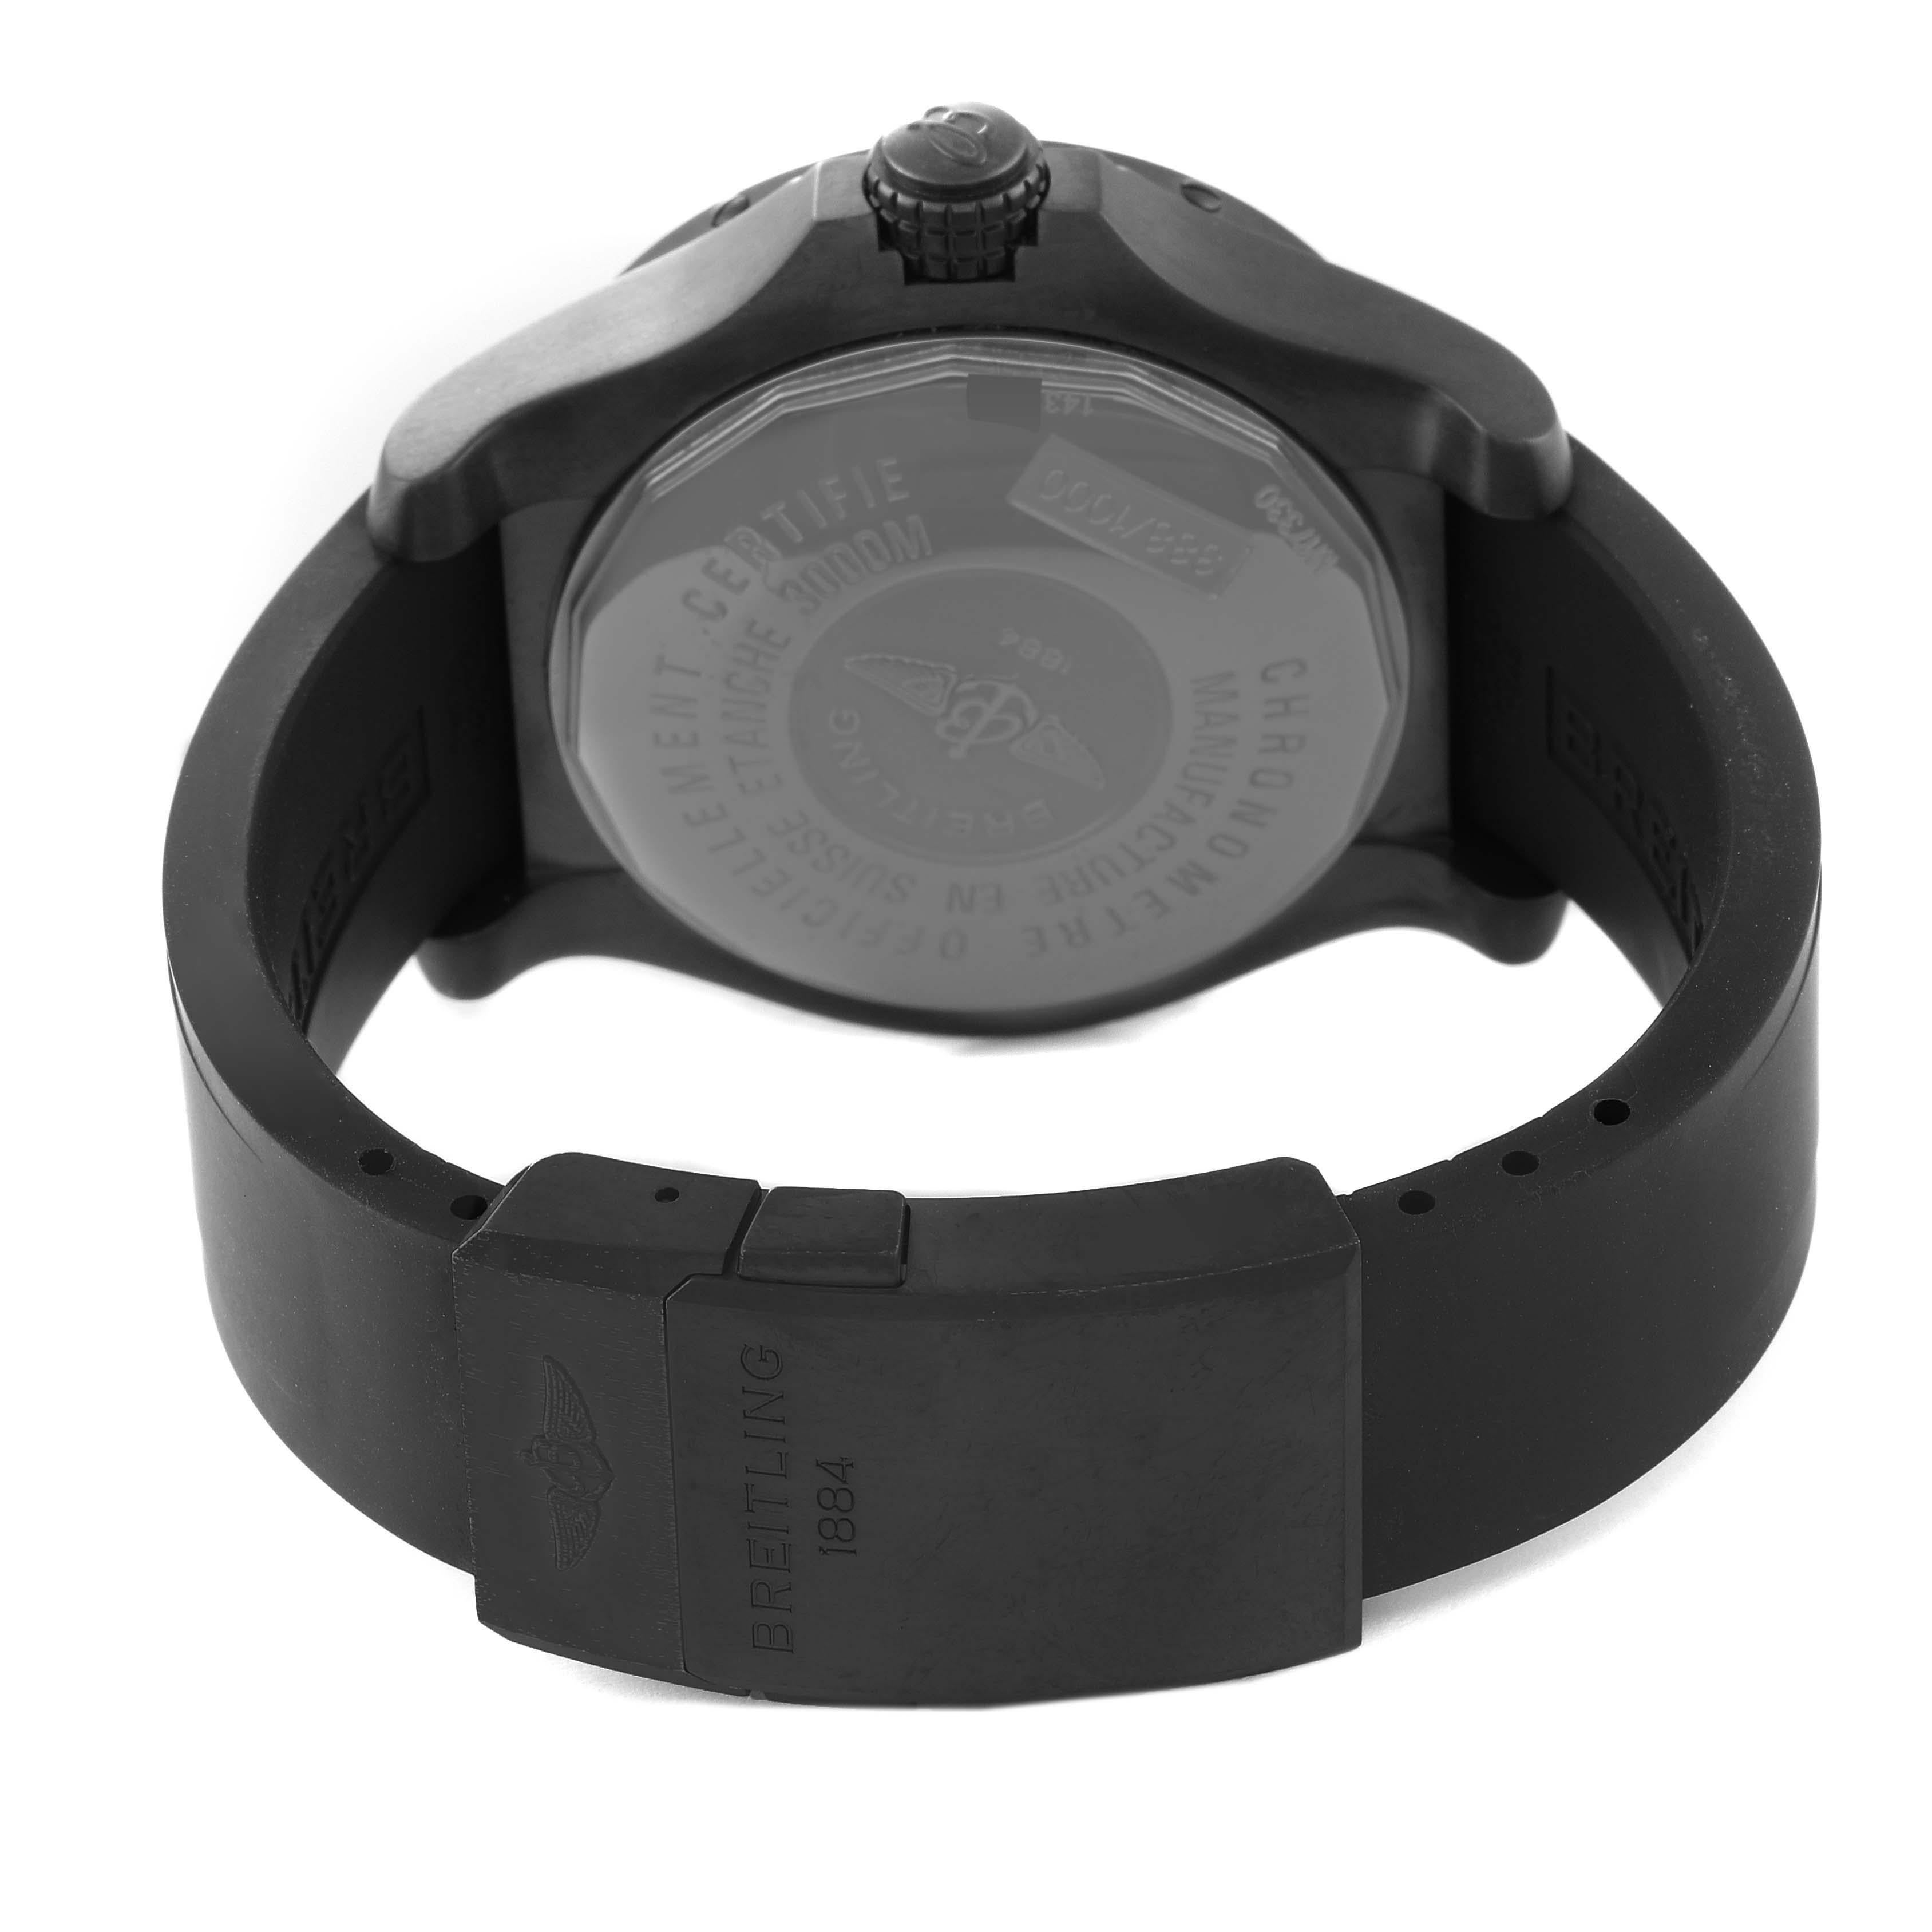 Breitling Avenger Seawolf Code Red Blacksteel Limited Edition Herrenuhr M17330 Box Papiere. Automatisches Uhrwerk mit Selbstaufzug. Gehäuse aus PVD-beschichtetem Edelstahl mit einem Durchmesser von 45,0 mm. Schwarz PVD-beschichteter Stahl mit